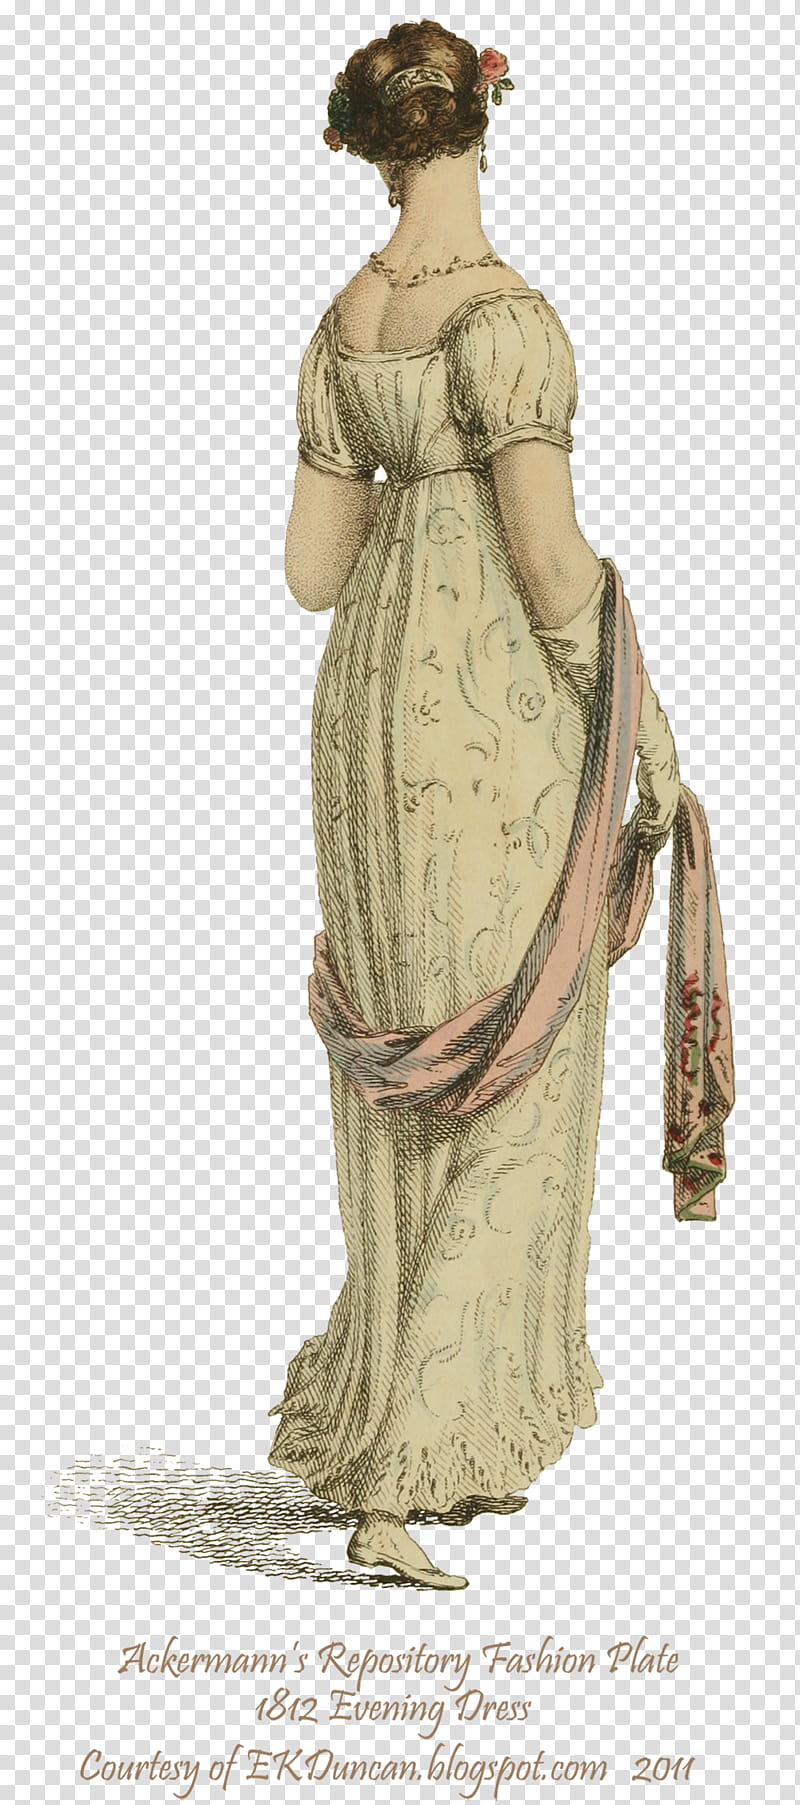 Regency Fashion  , female wearing floral dress artwork transparent background PNG clipart